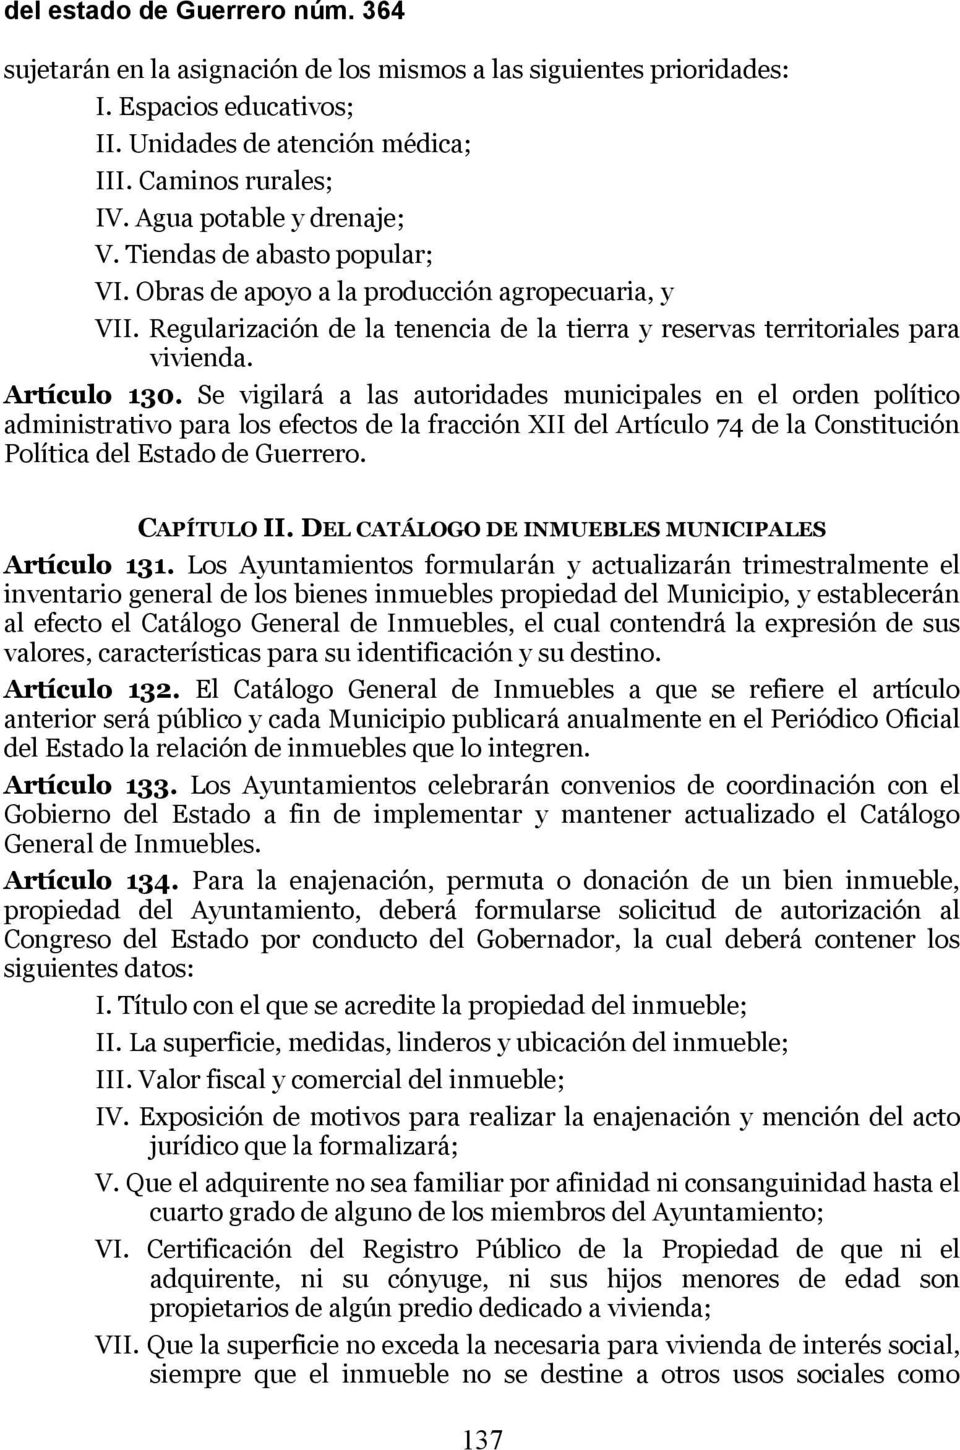 Artículo 130. Se vigilará a las autoridades municipales en el orden político administrativo para los efectos de la fracción XII del Artículo 74 de la Constitución Política del Estado de Guerrero.